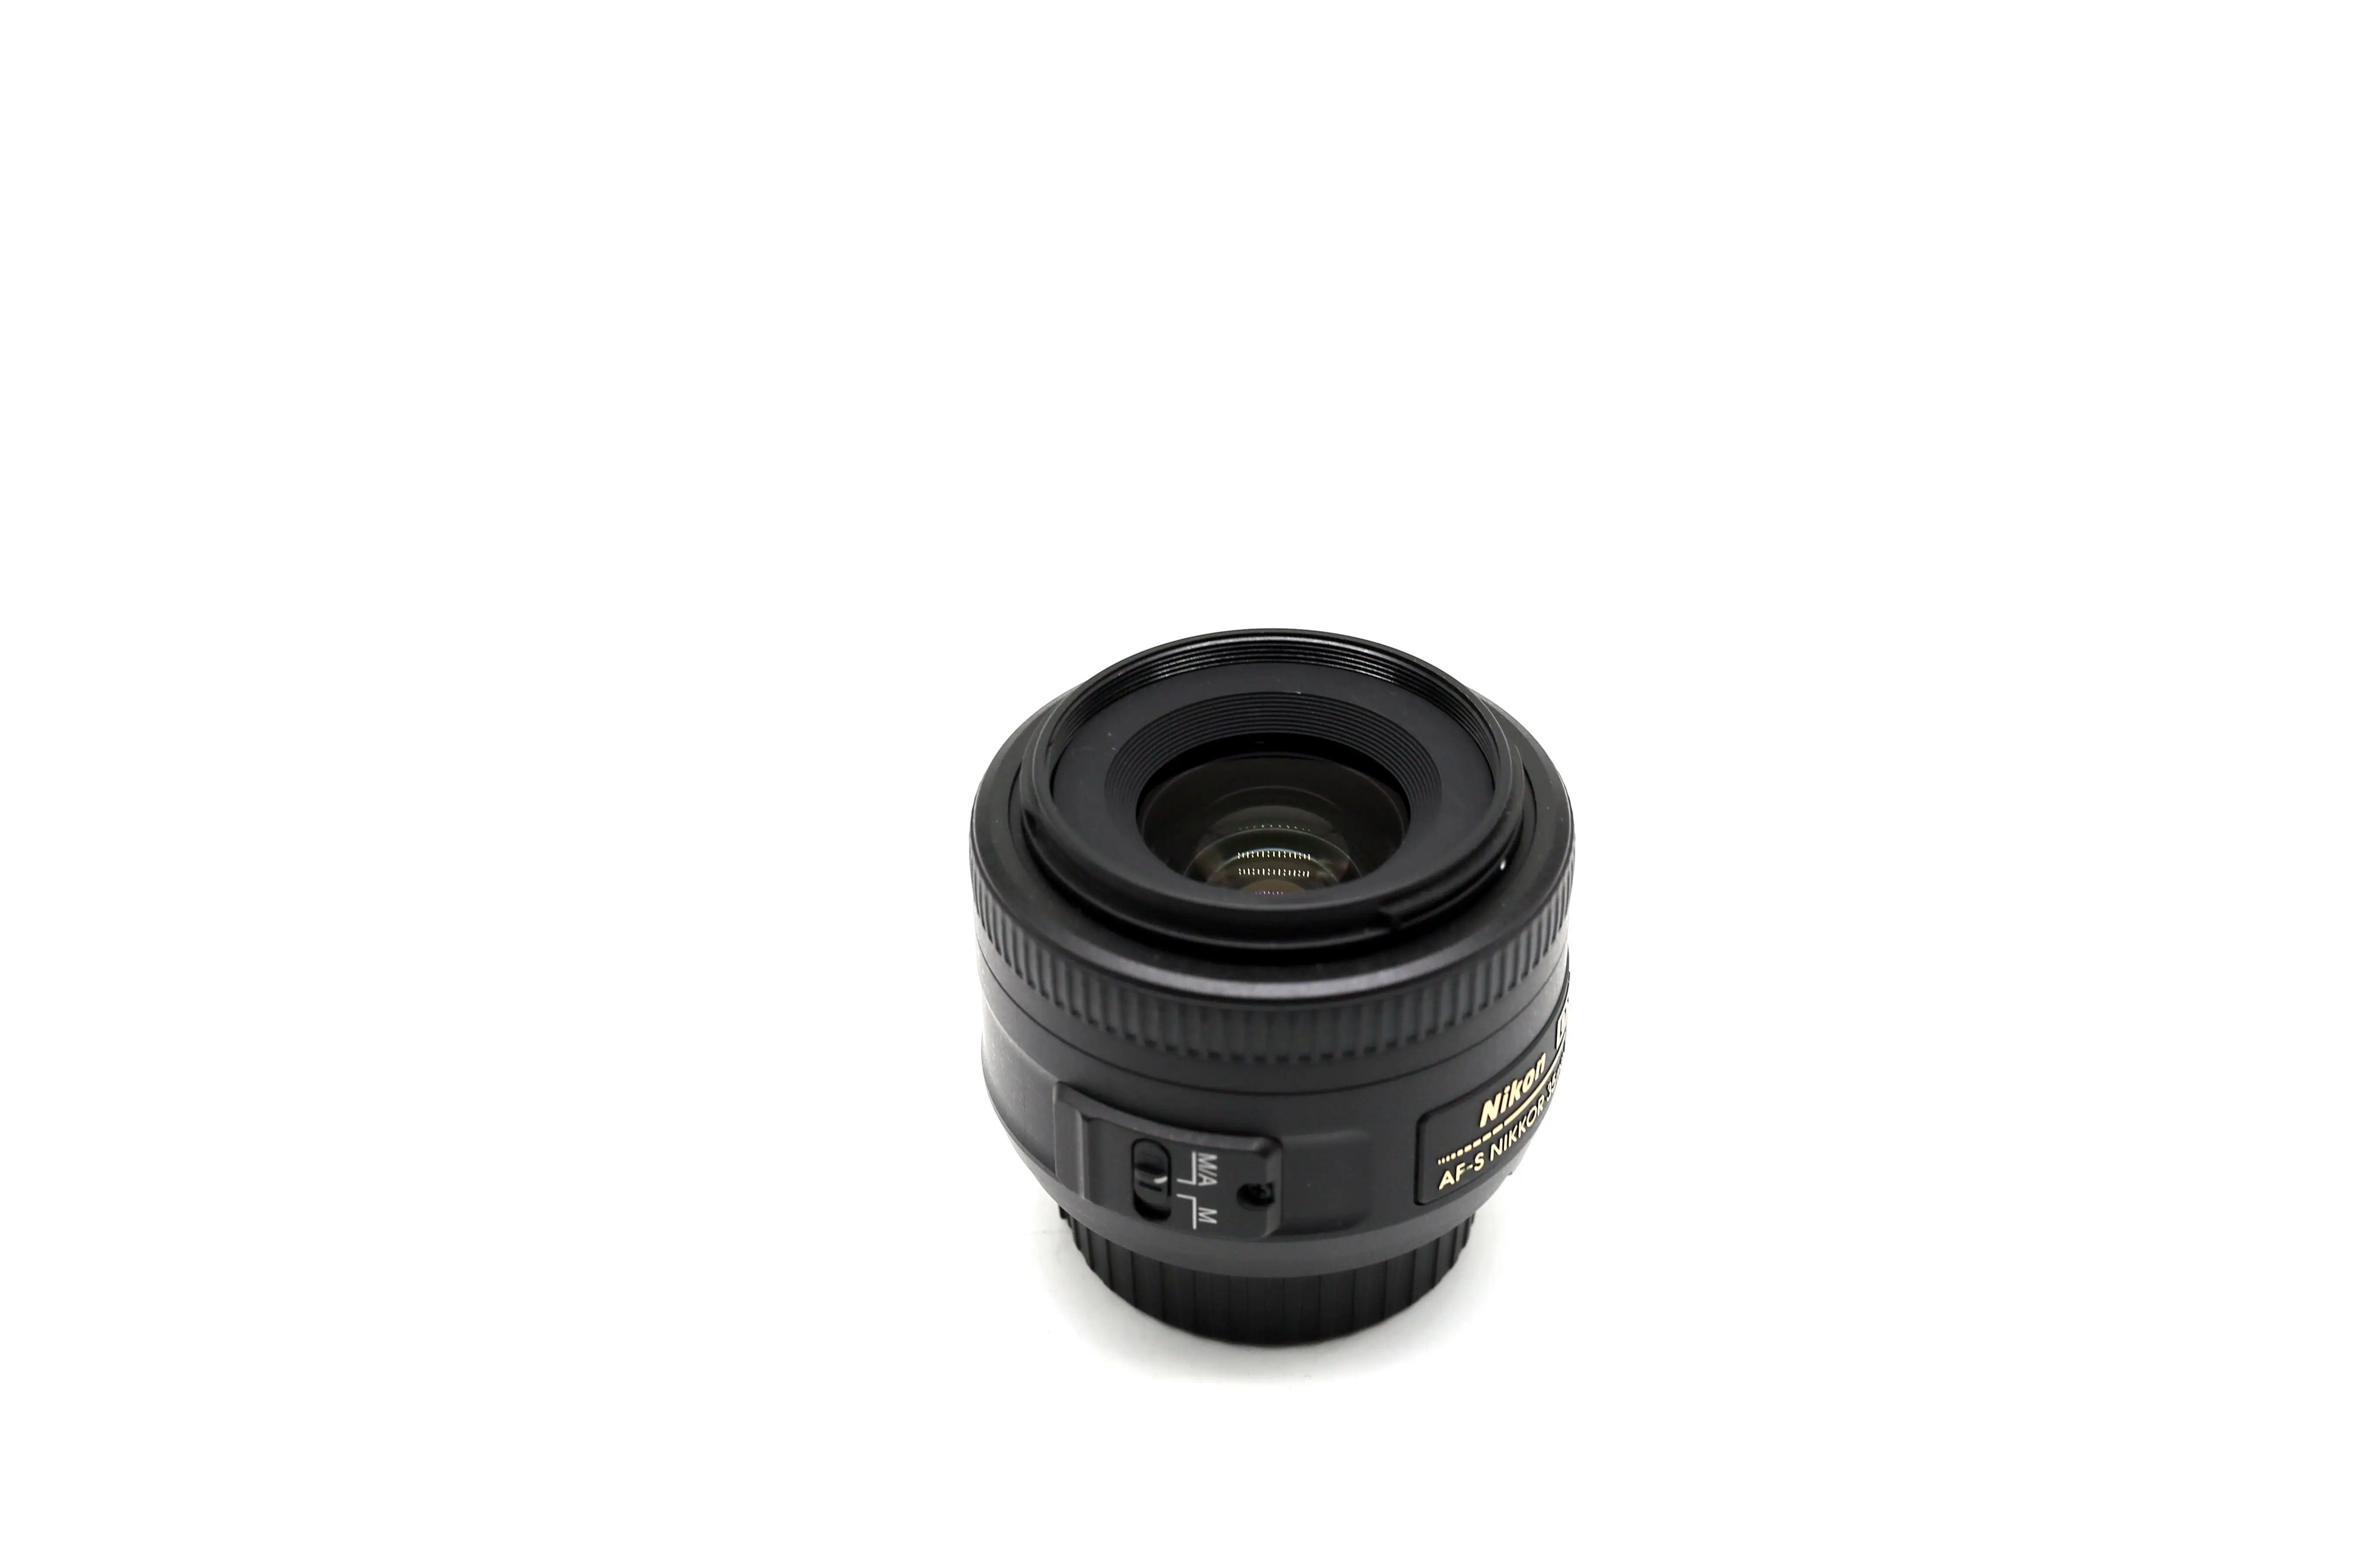 USED Nikon AF S DX NIKKOR 35mm f/1.8G Lens with Auto Focus for Nikon DSLR  Cameras|Camera Lens| - AliExpress